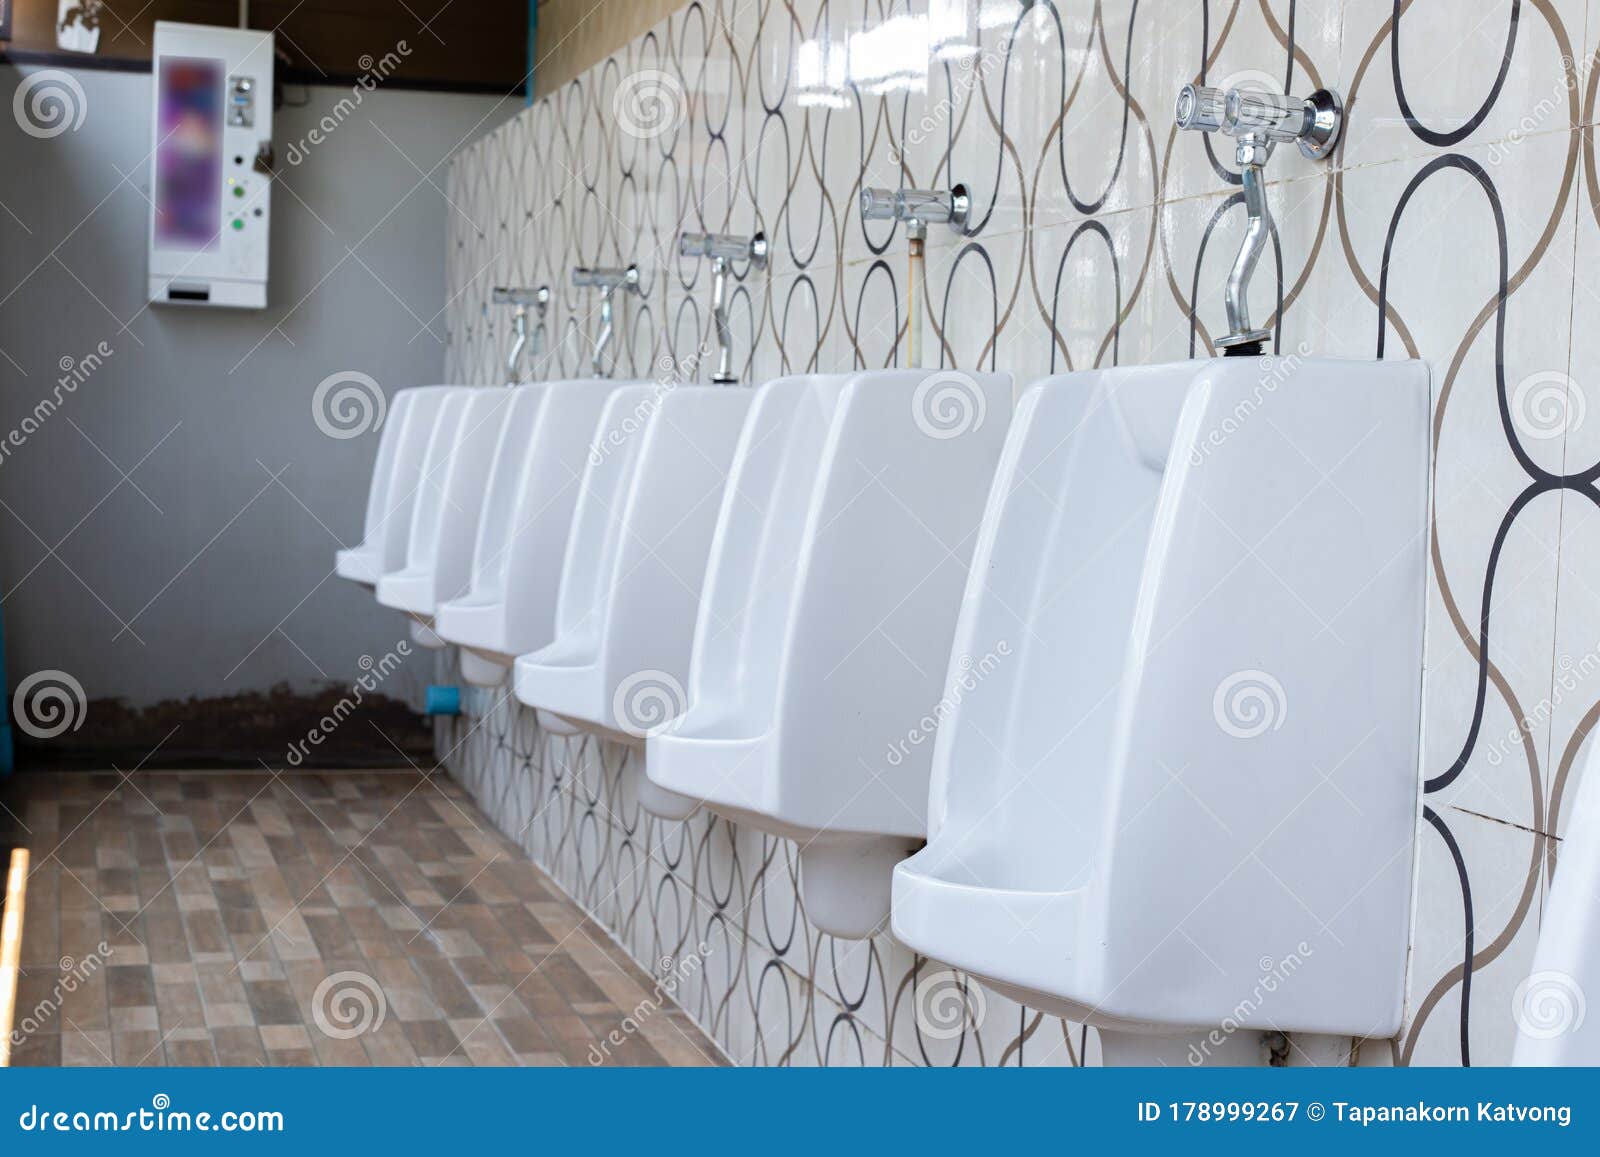 公共厕所舒适男性厕所小便器白小便 库存照片. 图片 包括有 设计, 现代, 洗手间, 内部, 耐洗, 有益健康 - 194271280